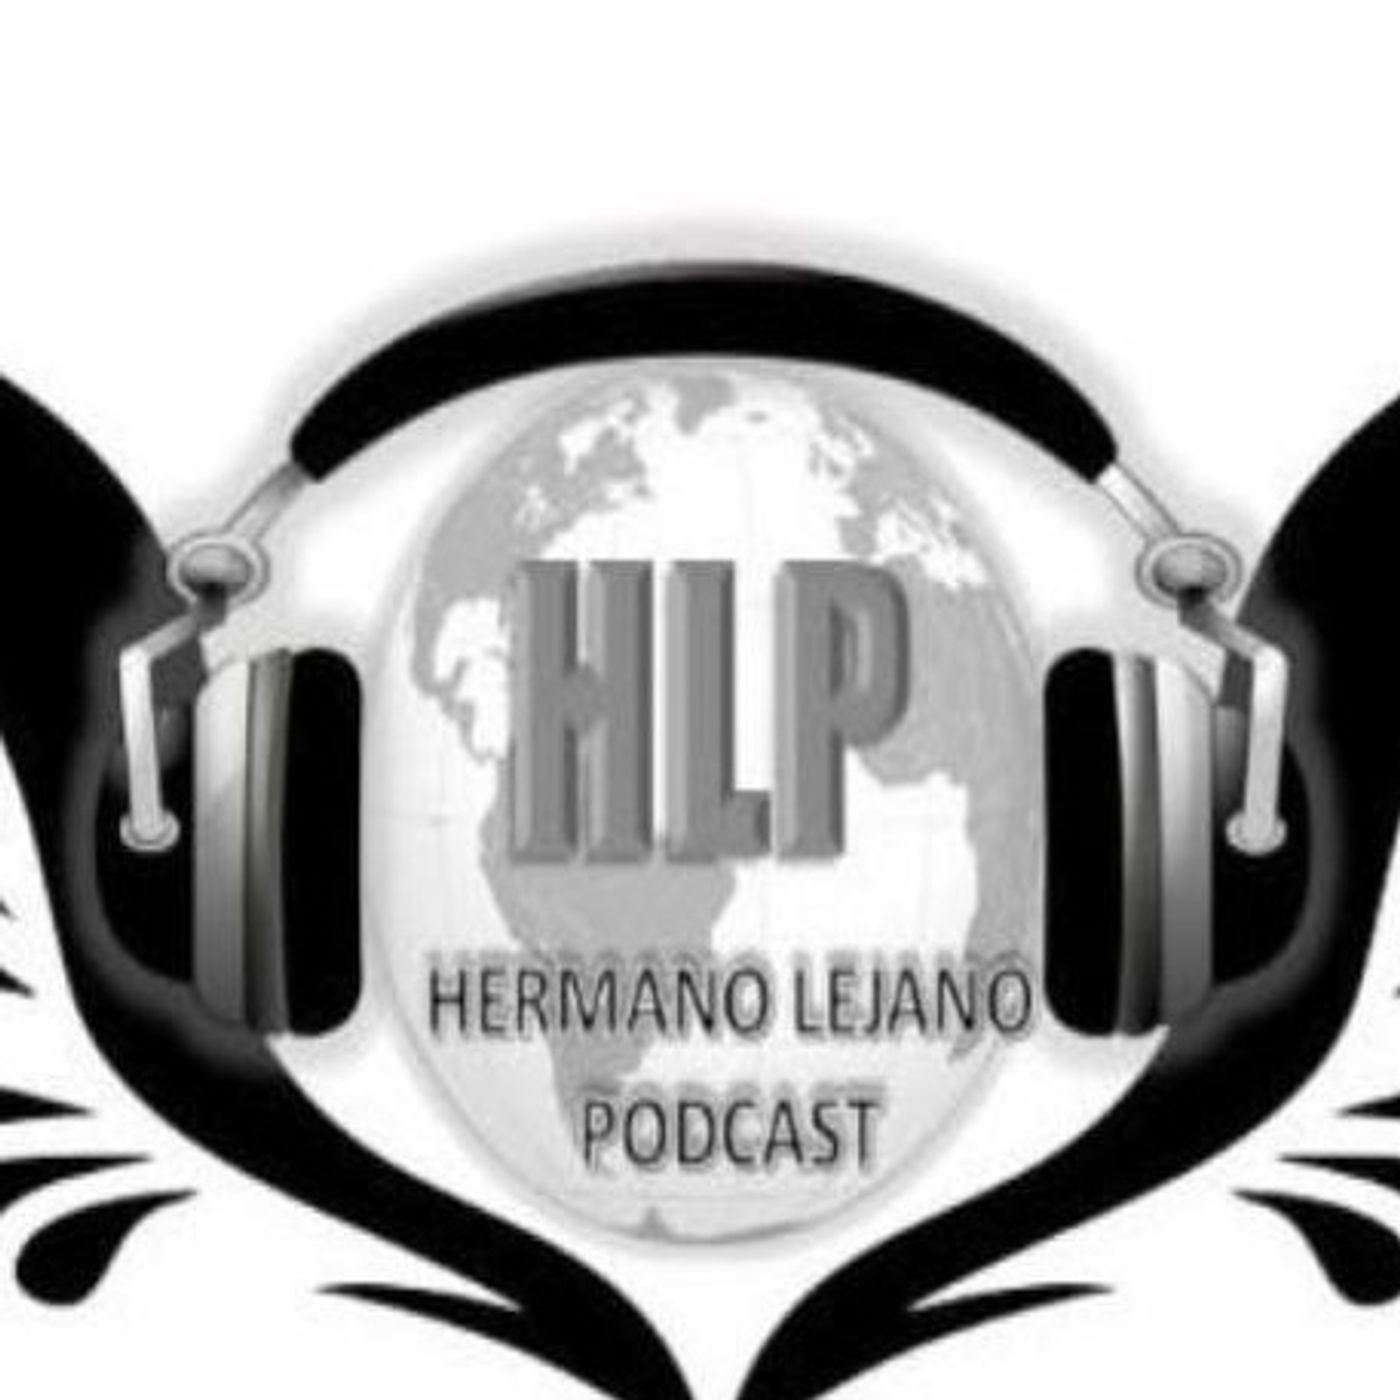 Hermano Lejano Podcast (HLP503)